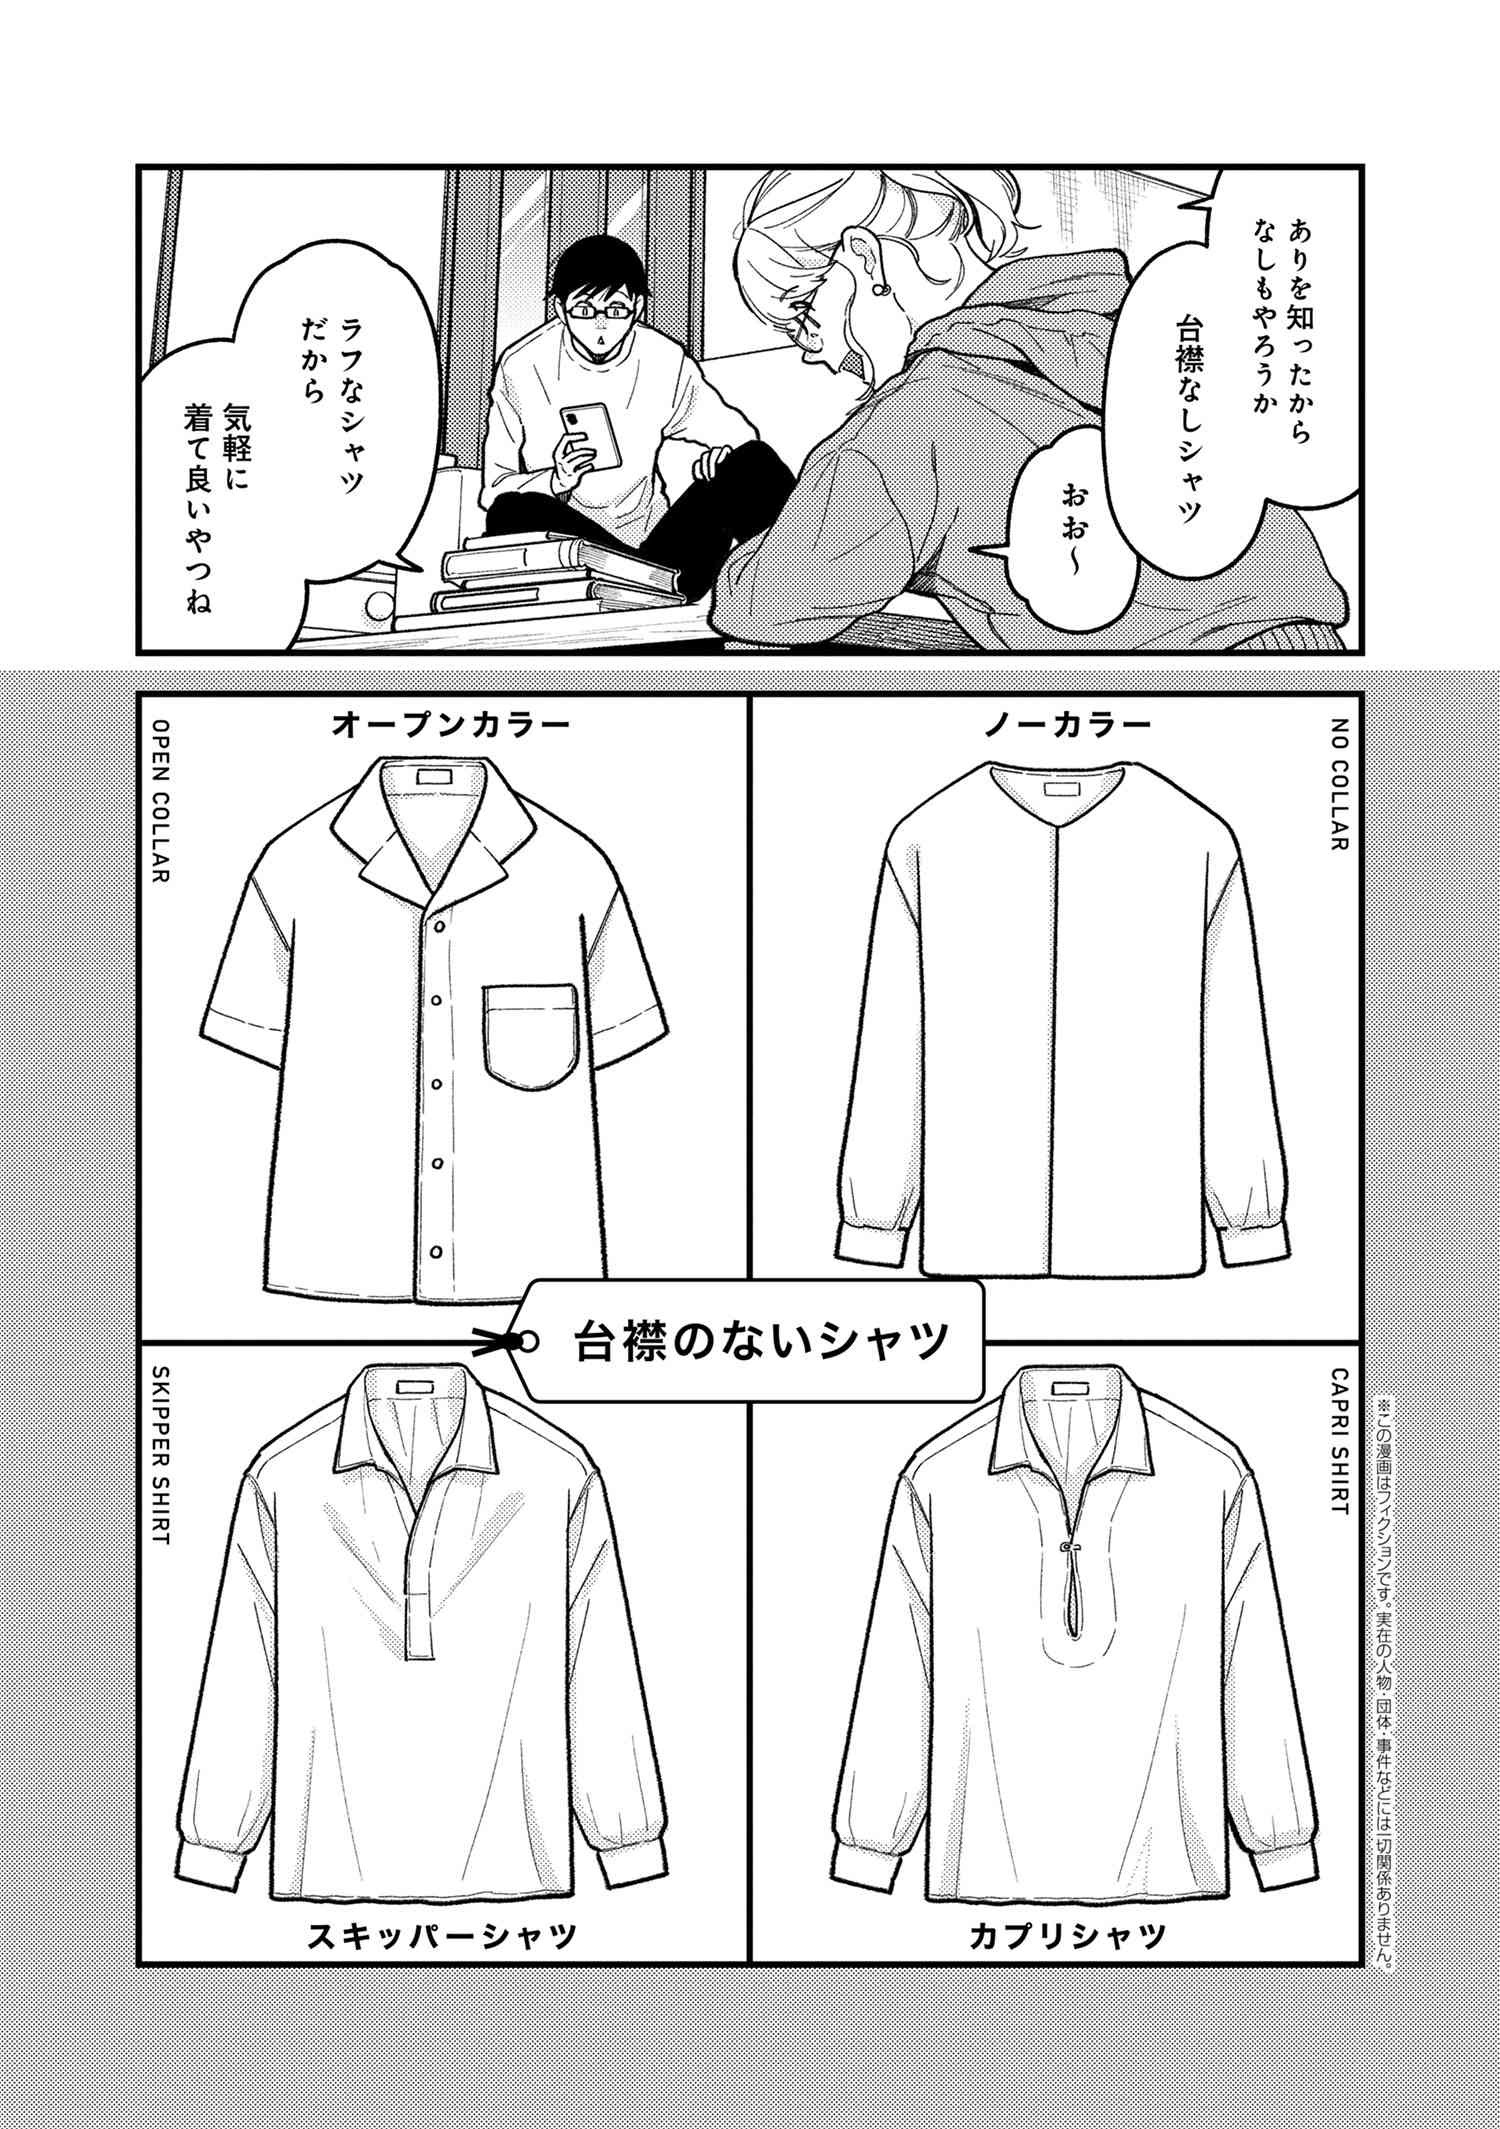 Fuku o Kiru Nara Konna Fuu ni - 服を着るならこんなふうに - Chapter 90 - Page 1